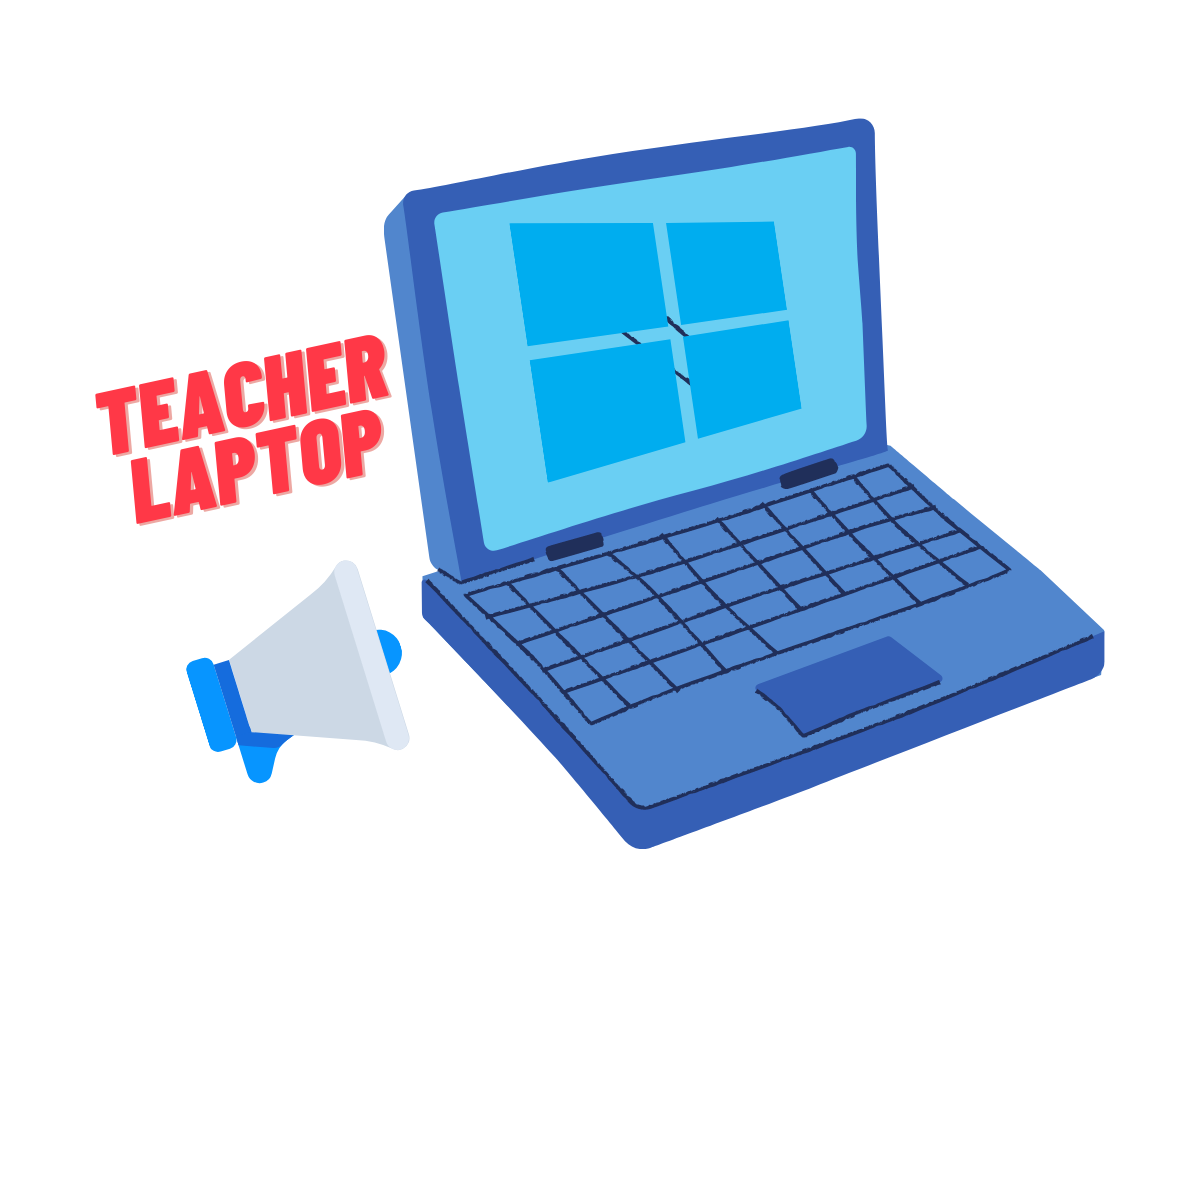 "teacher laptop" written and cartoon laptop